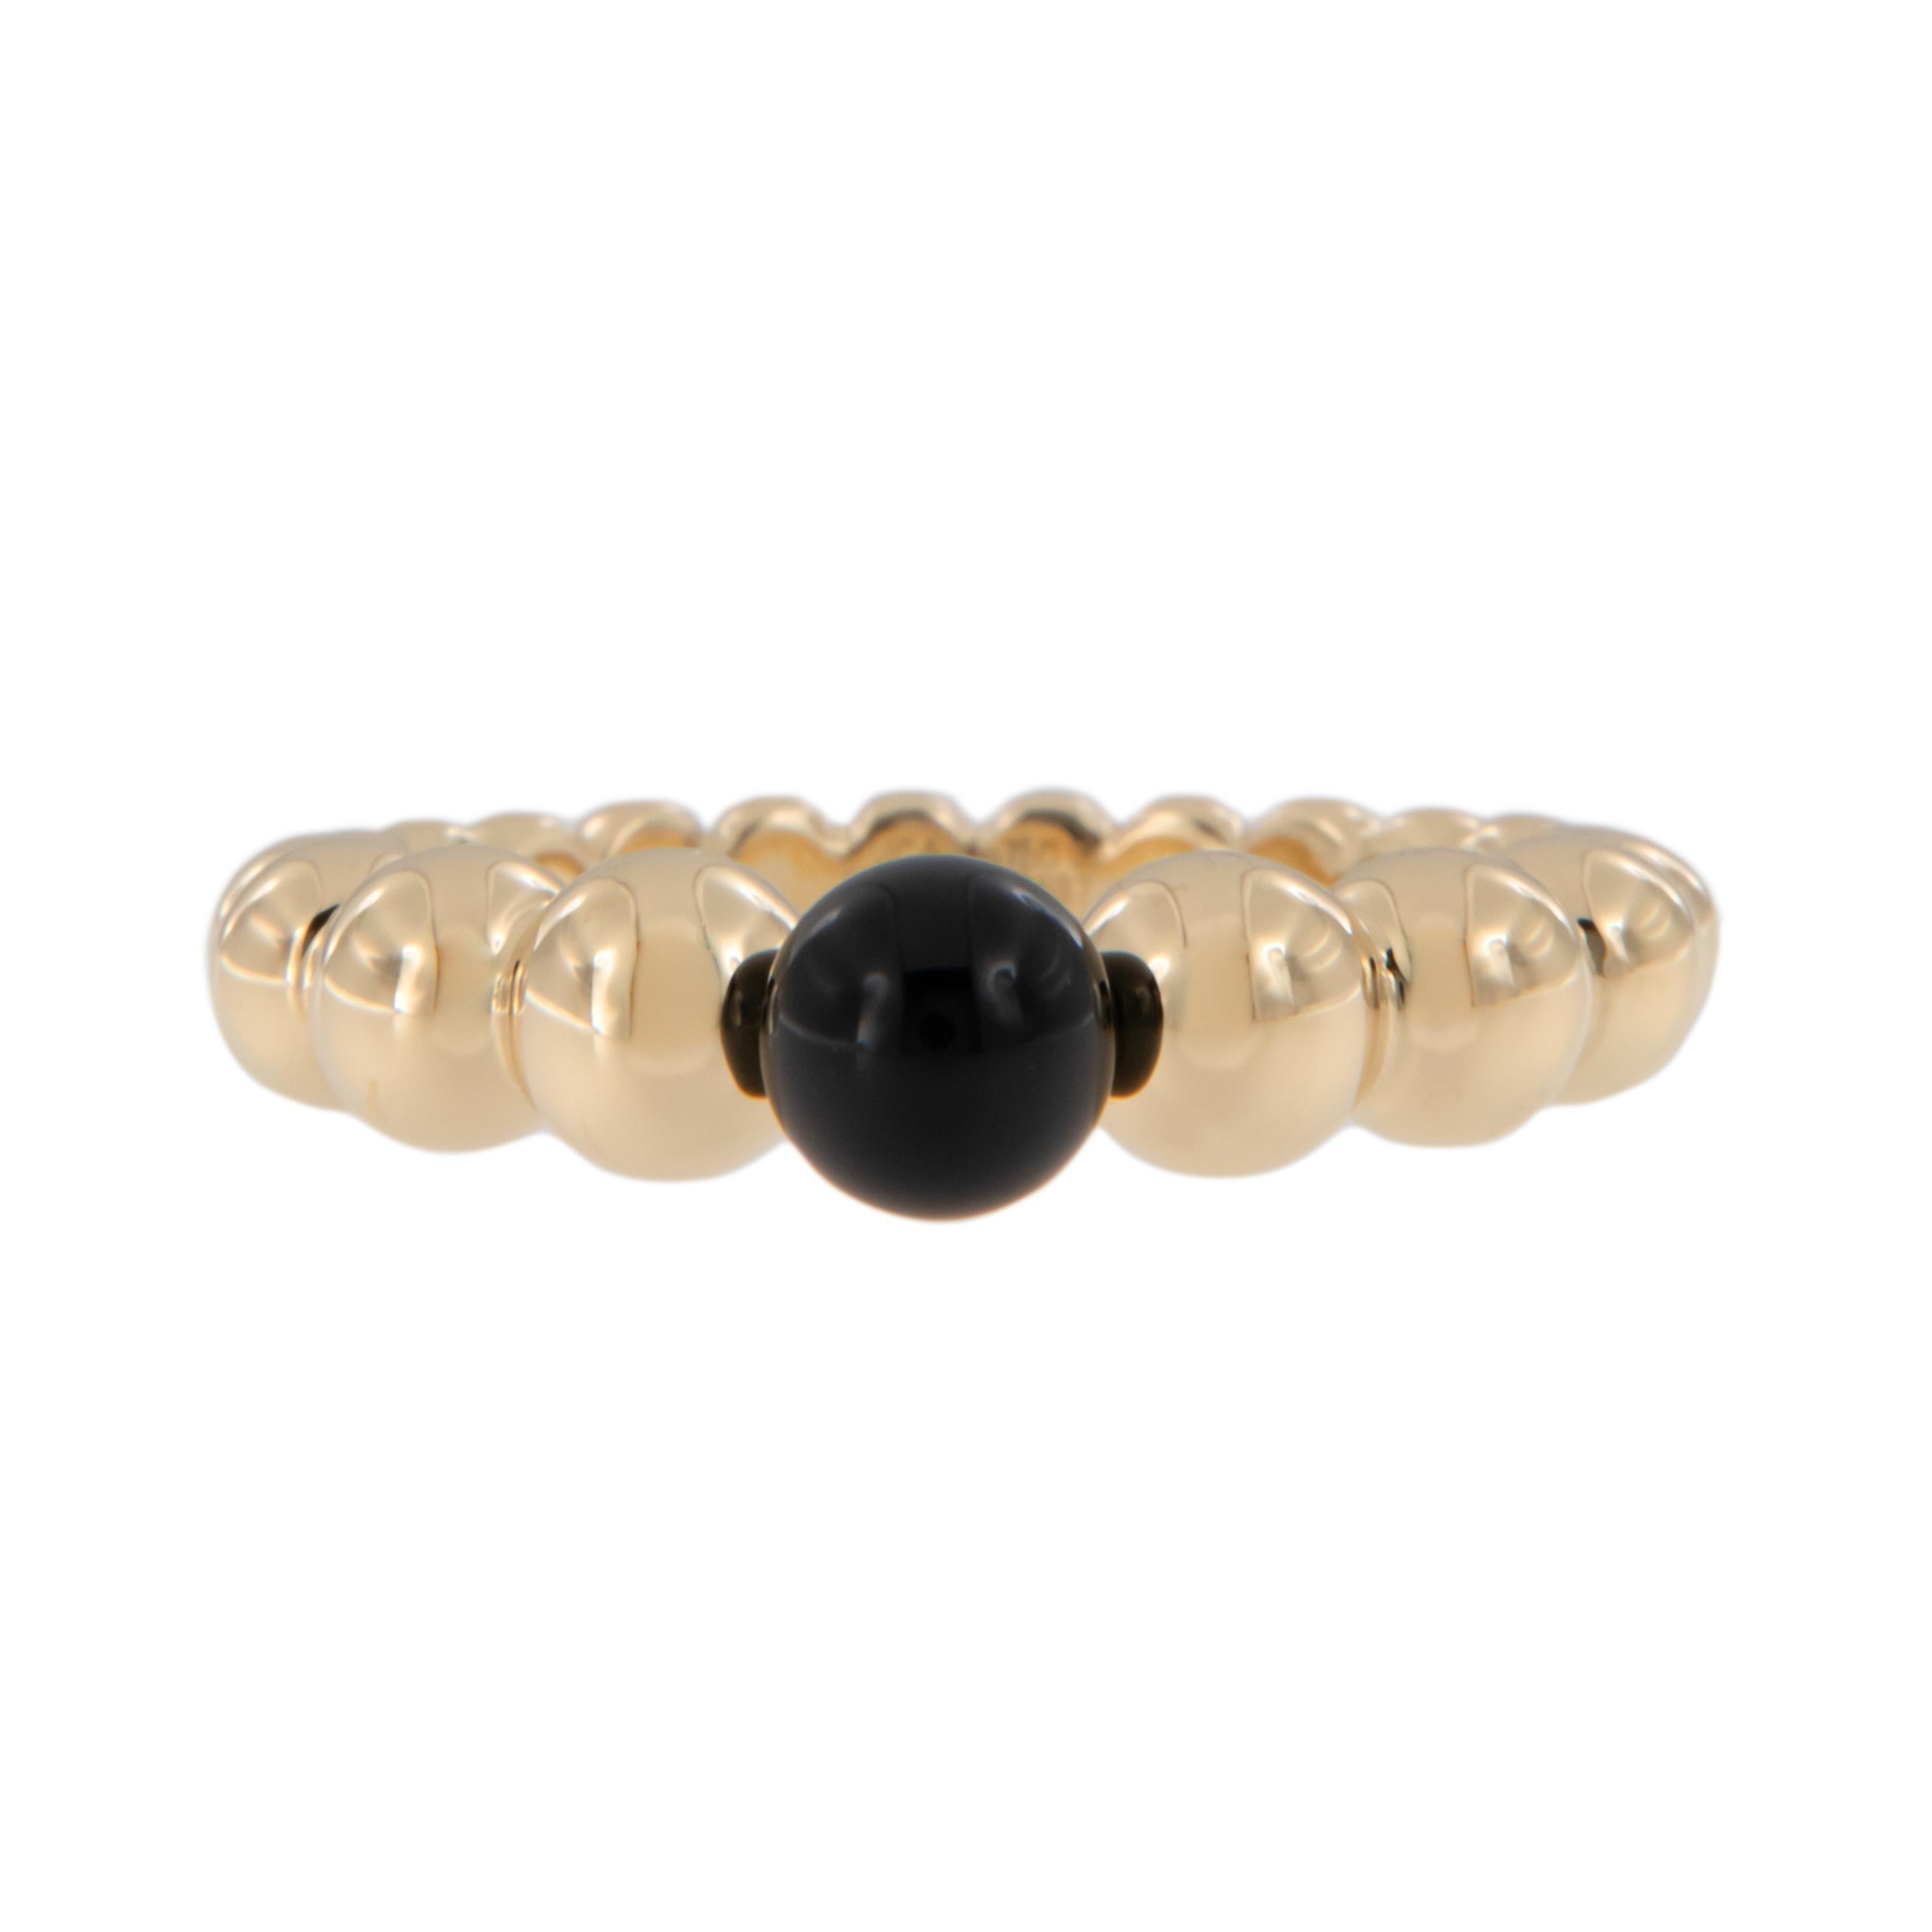 Les lignes courbes de la bague perlée en or jaune 18 carats symbolisent les perles d'or. Cette jolie bague met en valeur une superbe perle centrale en onyx noir (5,3 mm) pour un effet dramatique, mais comme elle est noire, elle se marie avec tout.